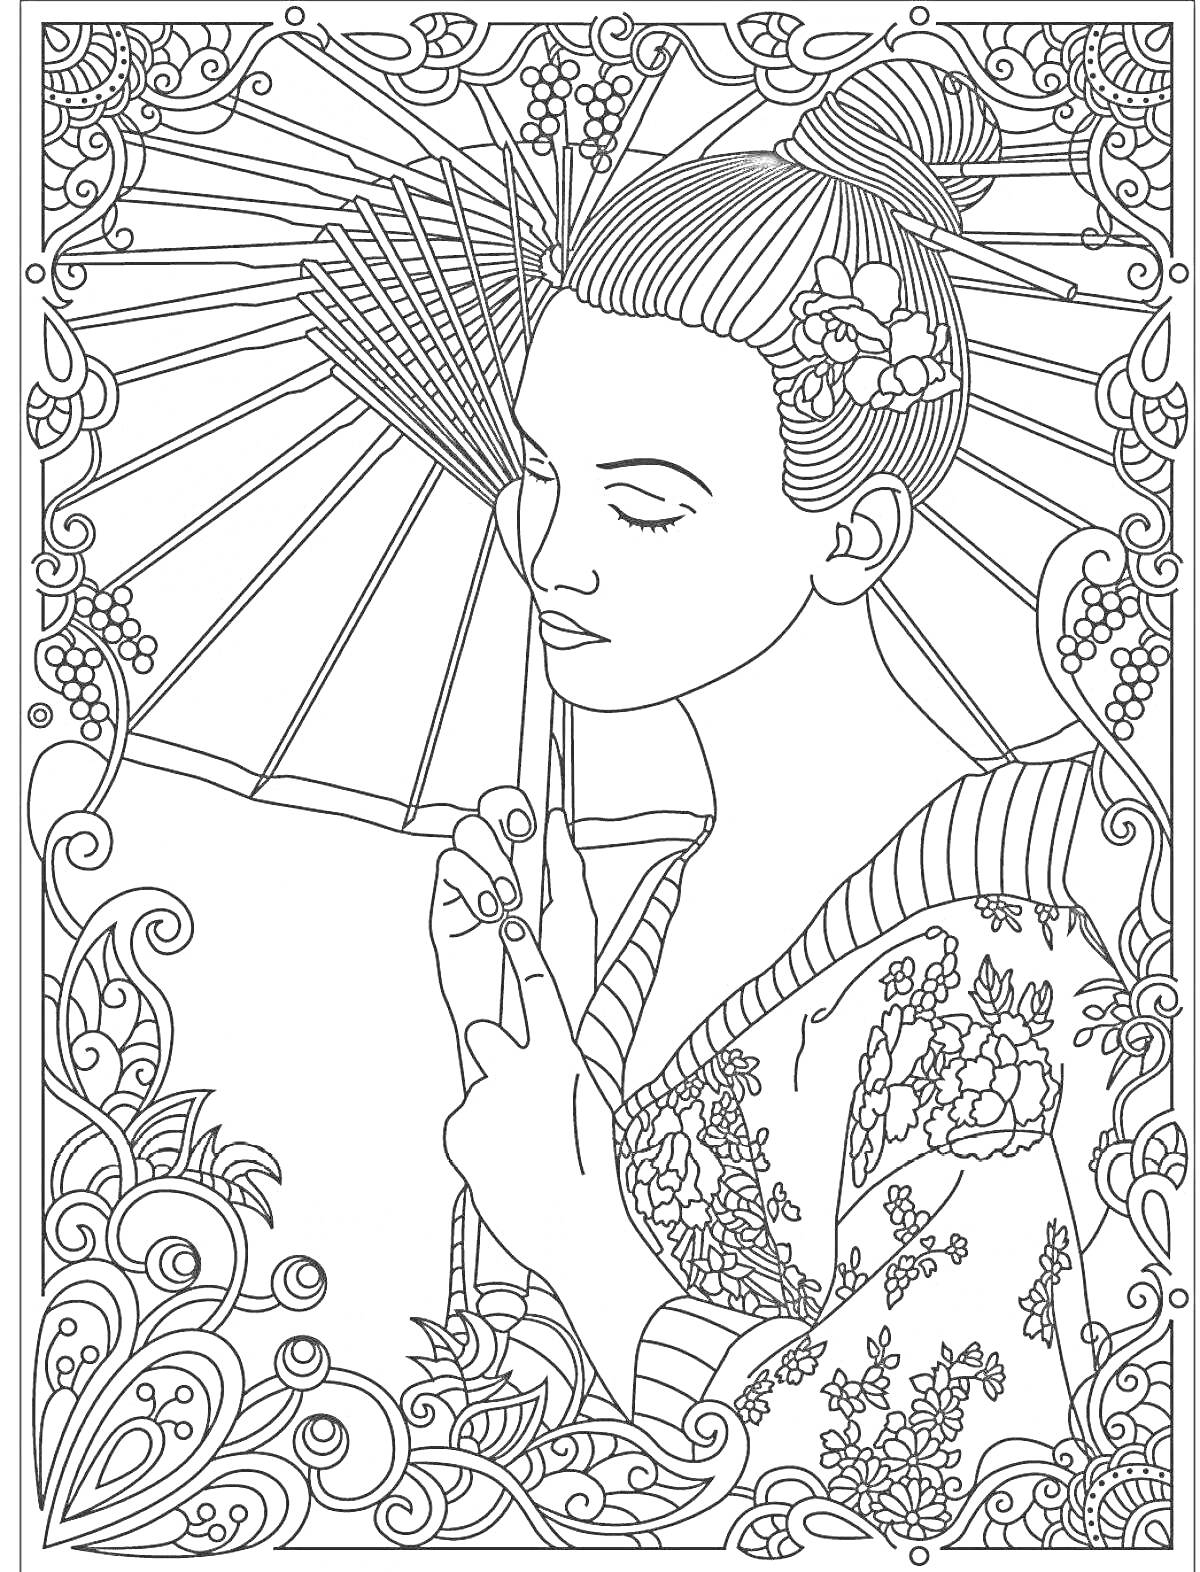 Раскраска гейша с зонтом, фон с узорами и цветами